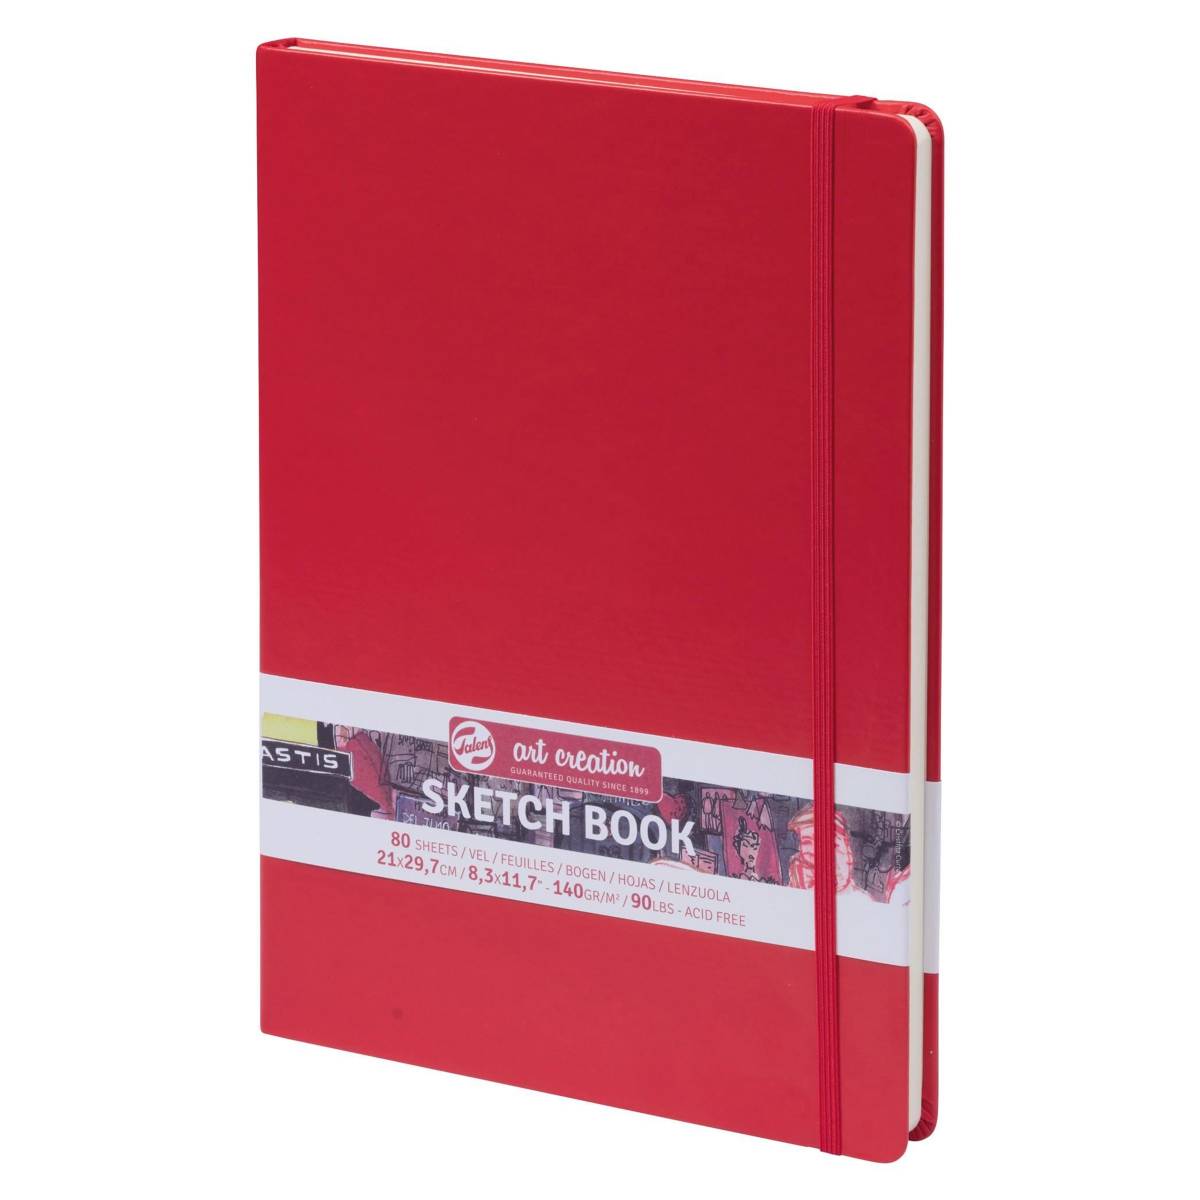 ספר רישום - סקטצ'בוק אדום A4 Talens